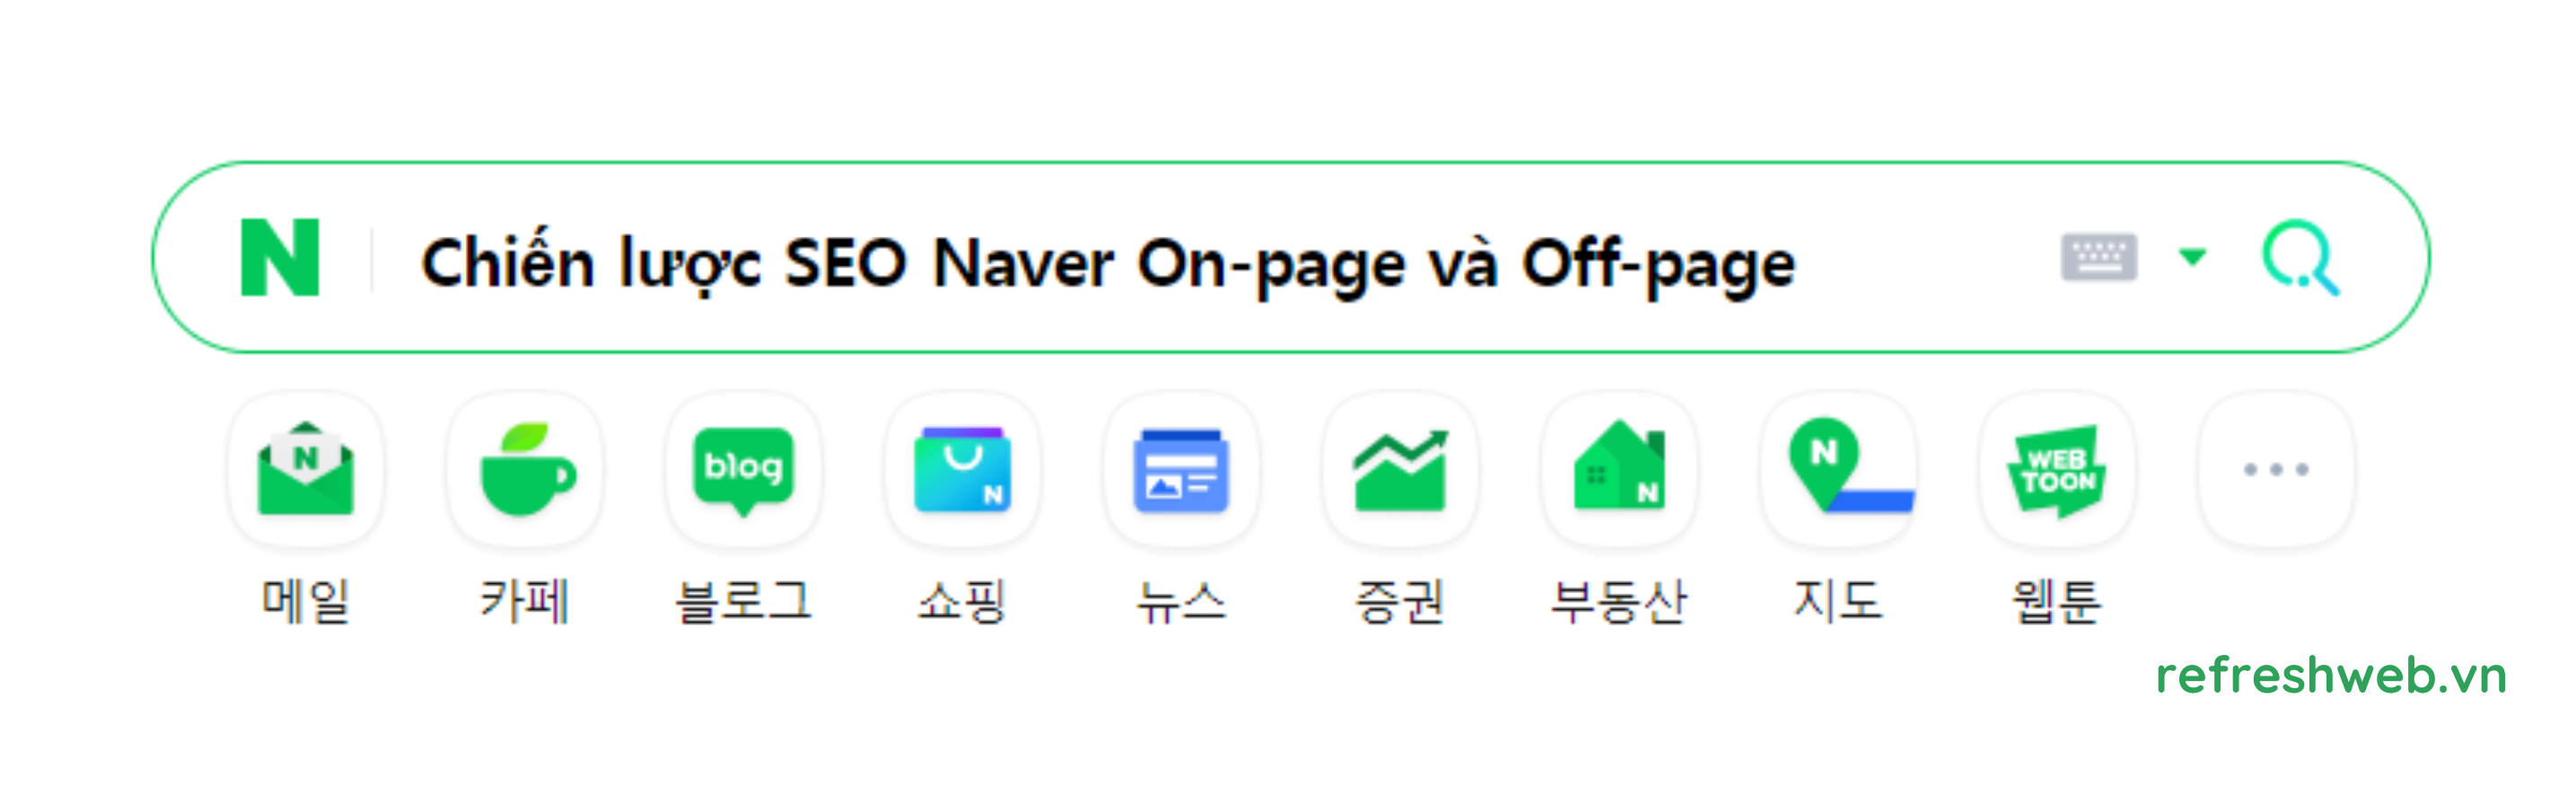 SEO Naver: Hướng dẫn triển khai chiến lược SEO On-page và Off-page hiệu quả